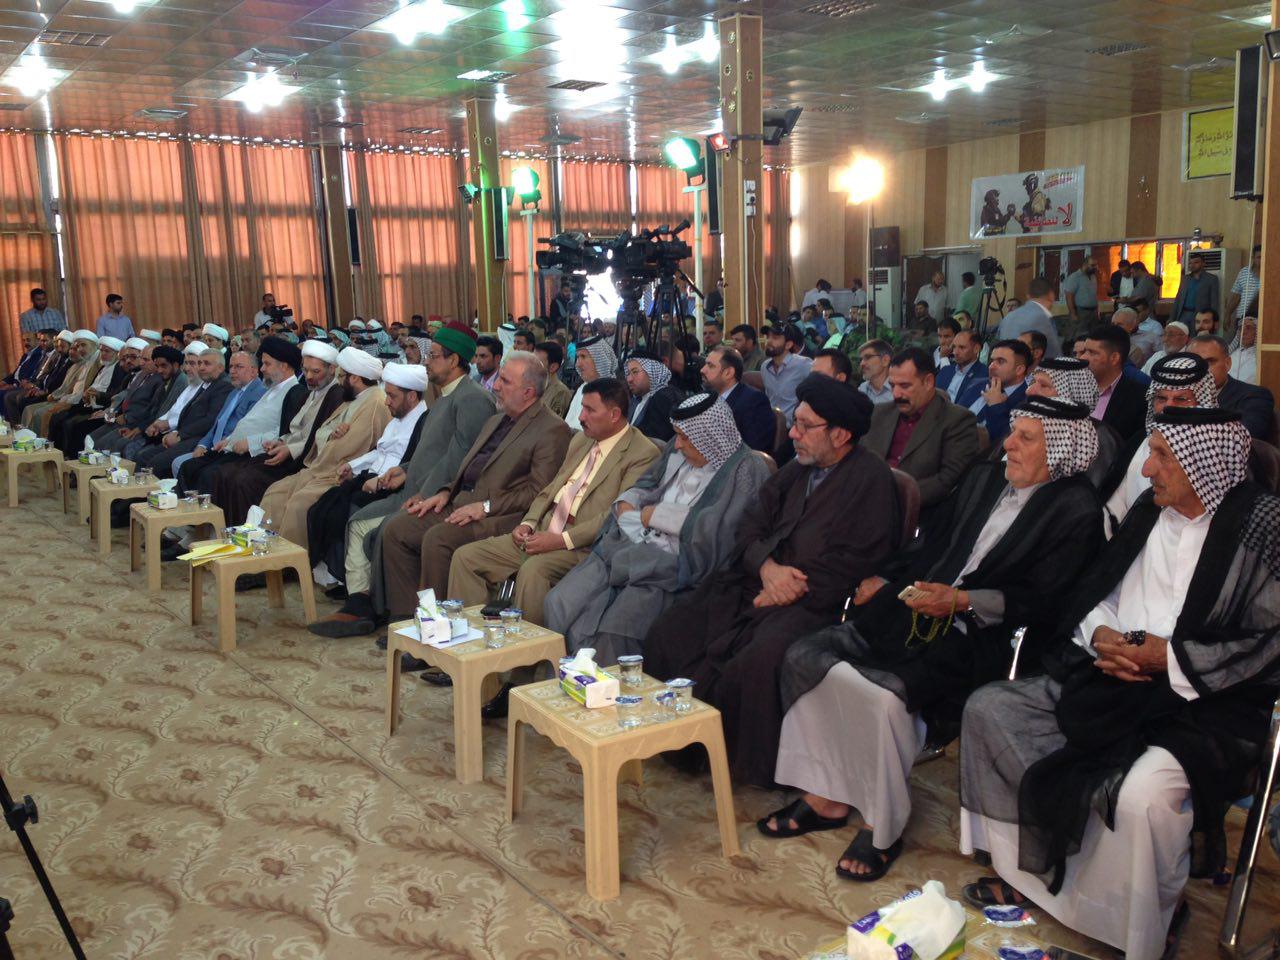 نهمین همایش فرهنگی «میثم تمار» در نجف برگزار شد